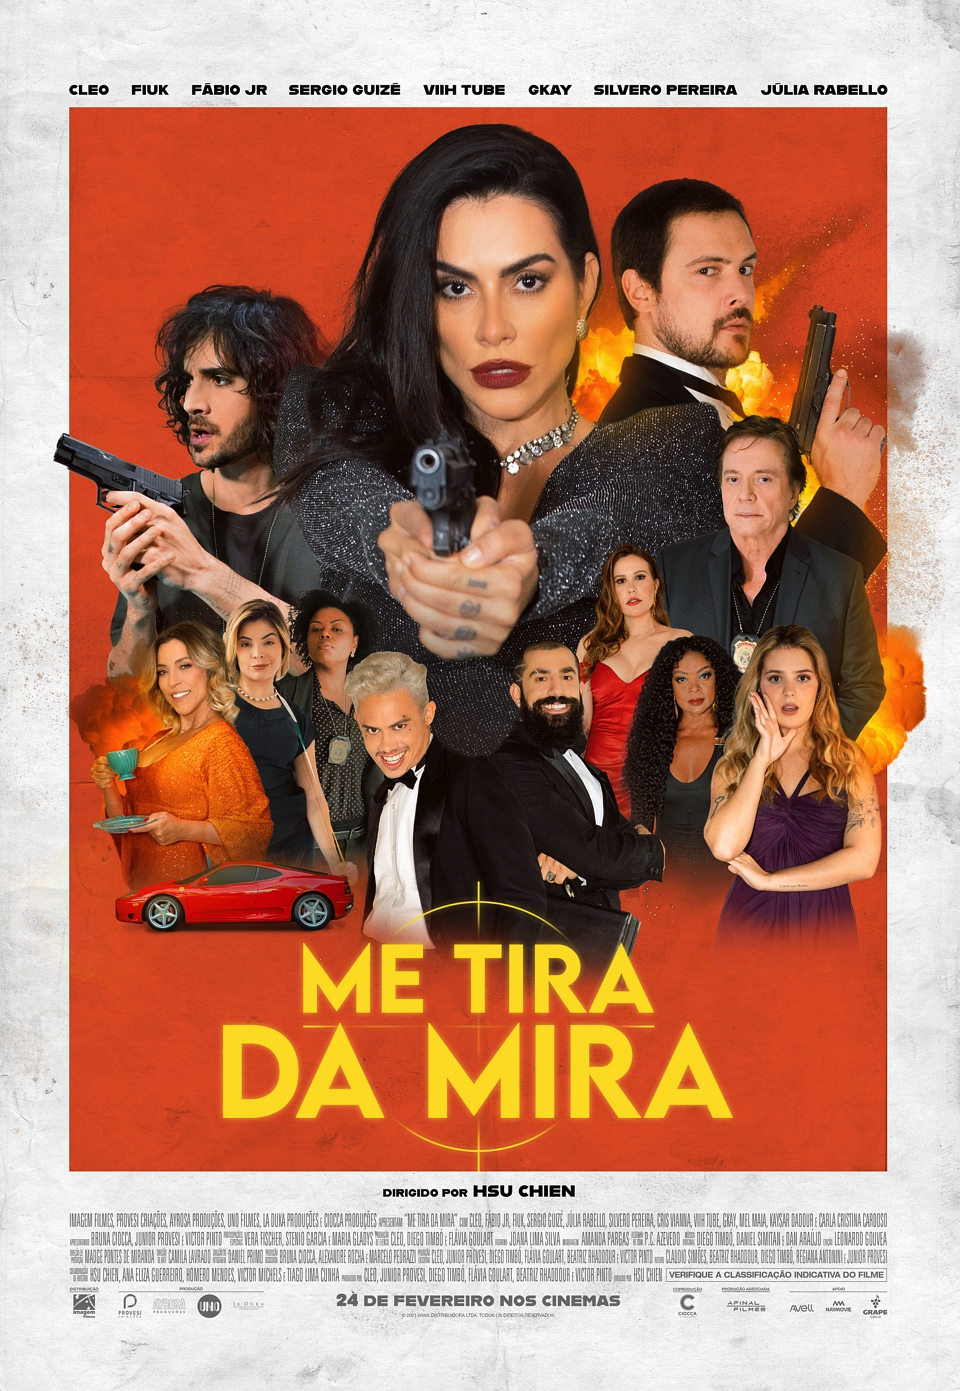 Me Tira da Mira! Filme com Cleo, Fiuk e Fábio Jr. ganha trailer e pôster